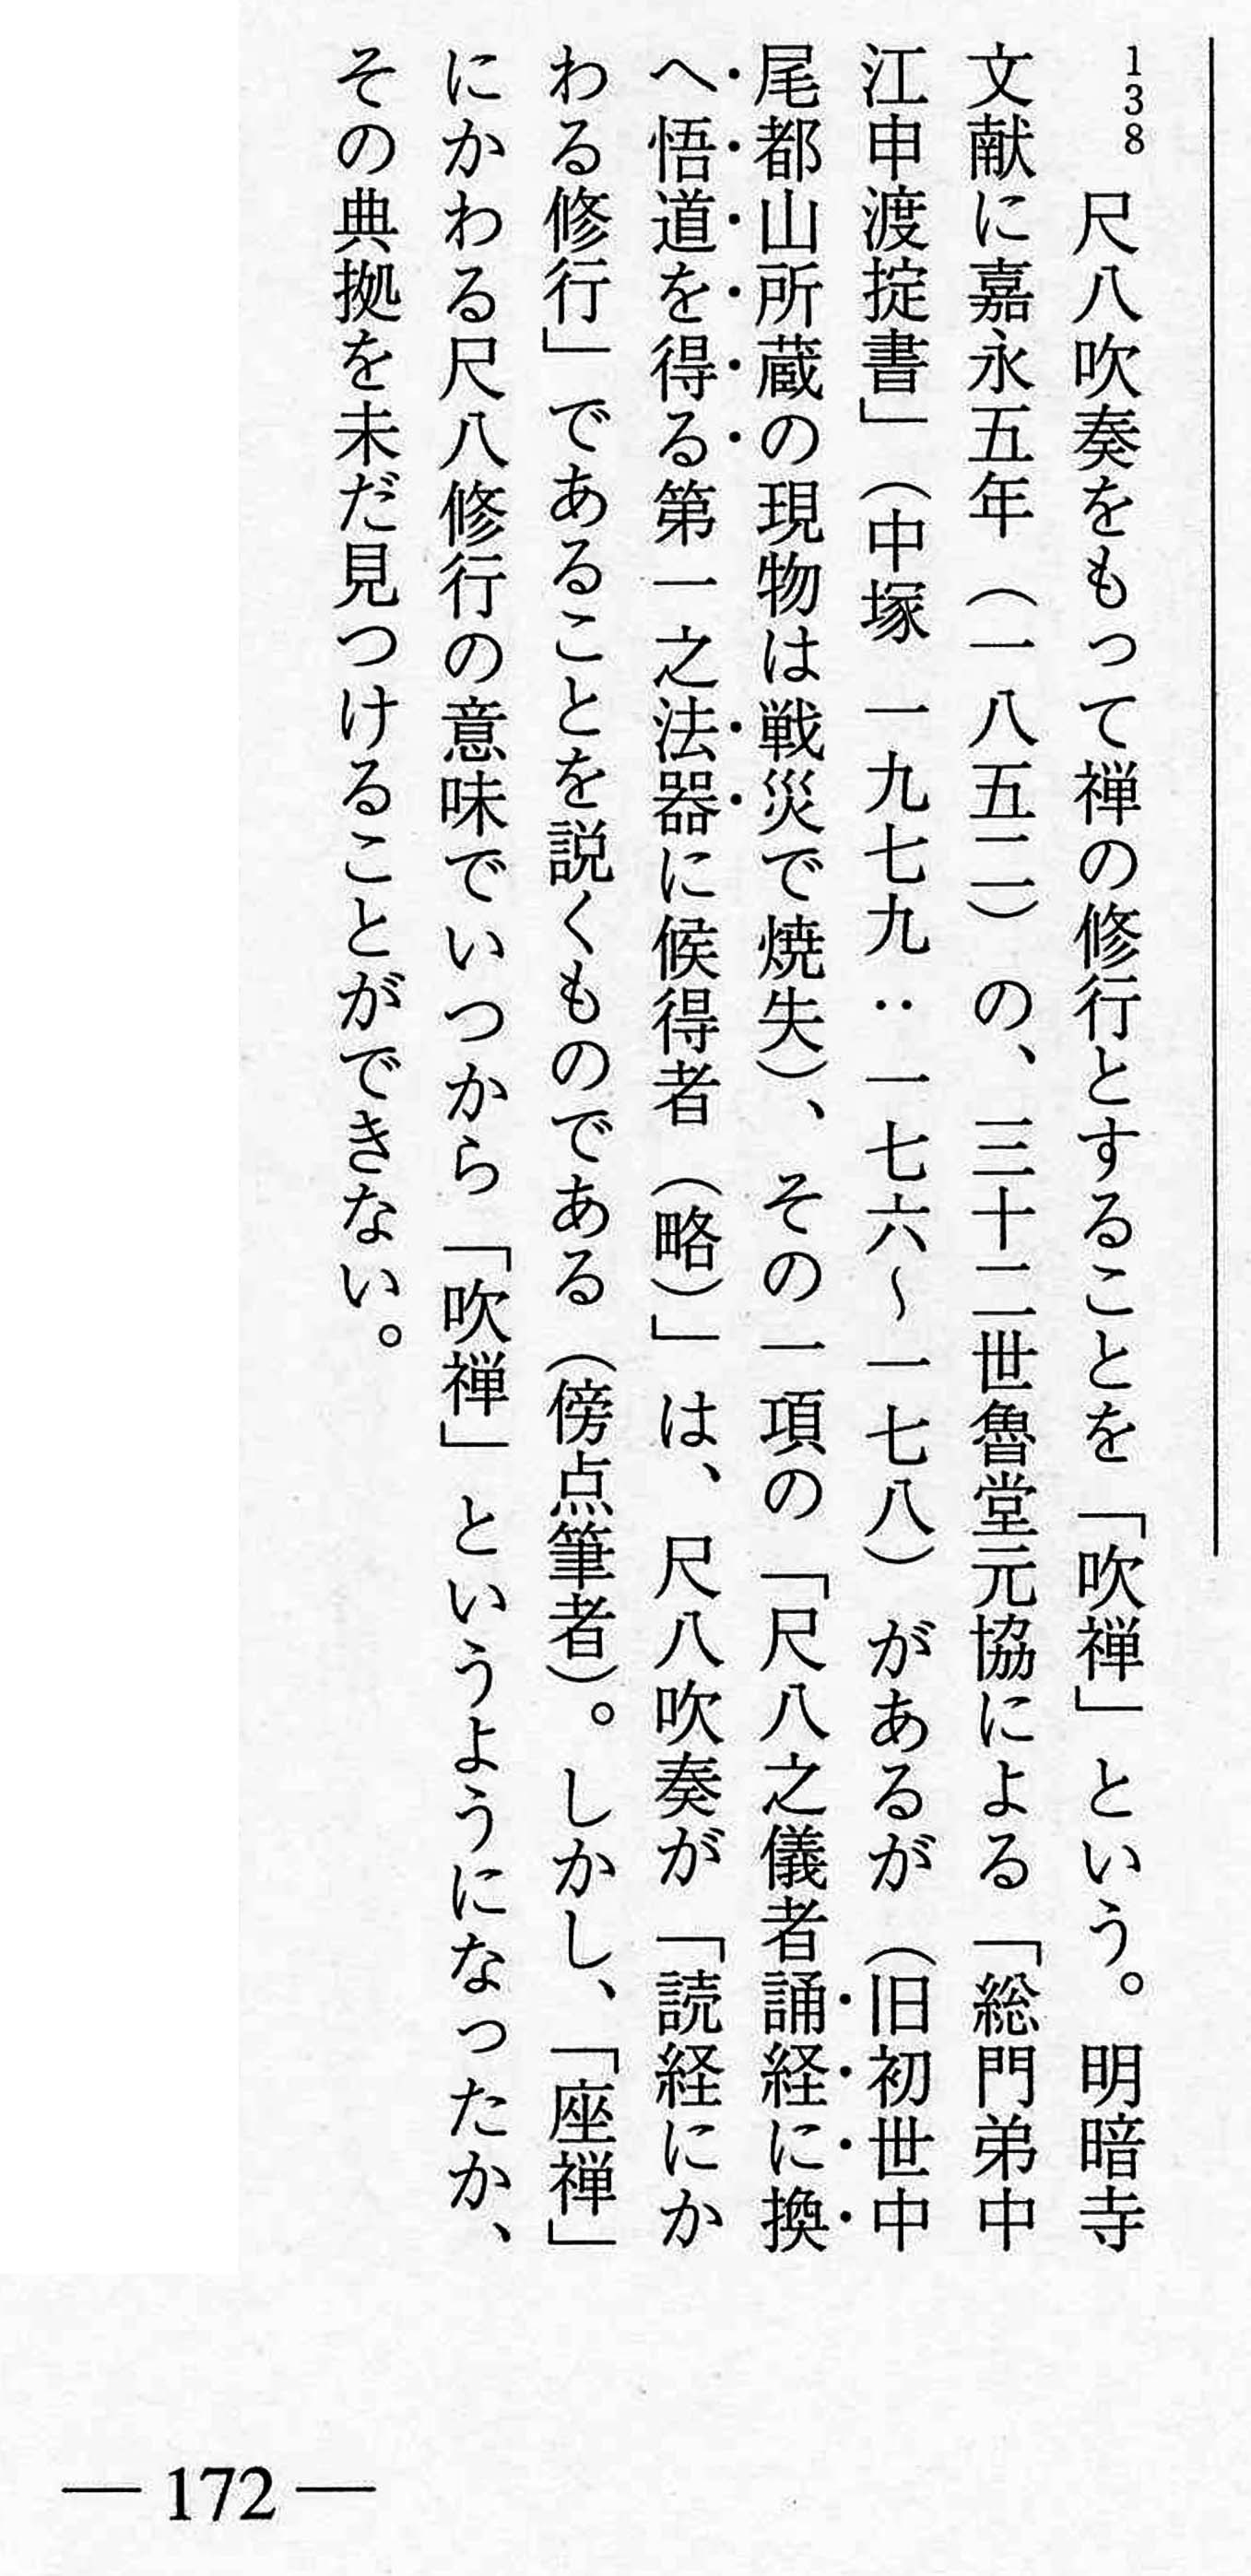 Tsukitani Tsuneko, 2000, p. 172, note 138